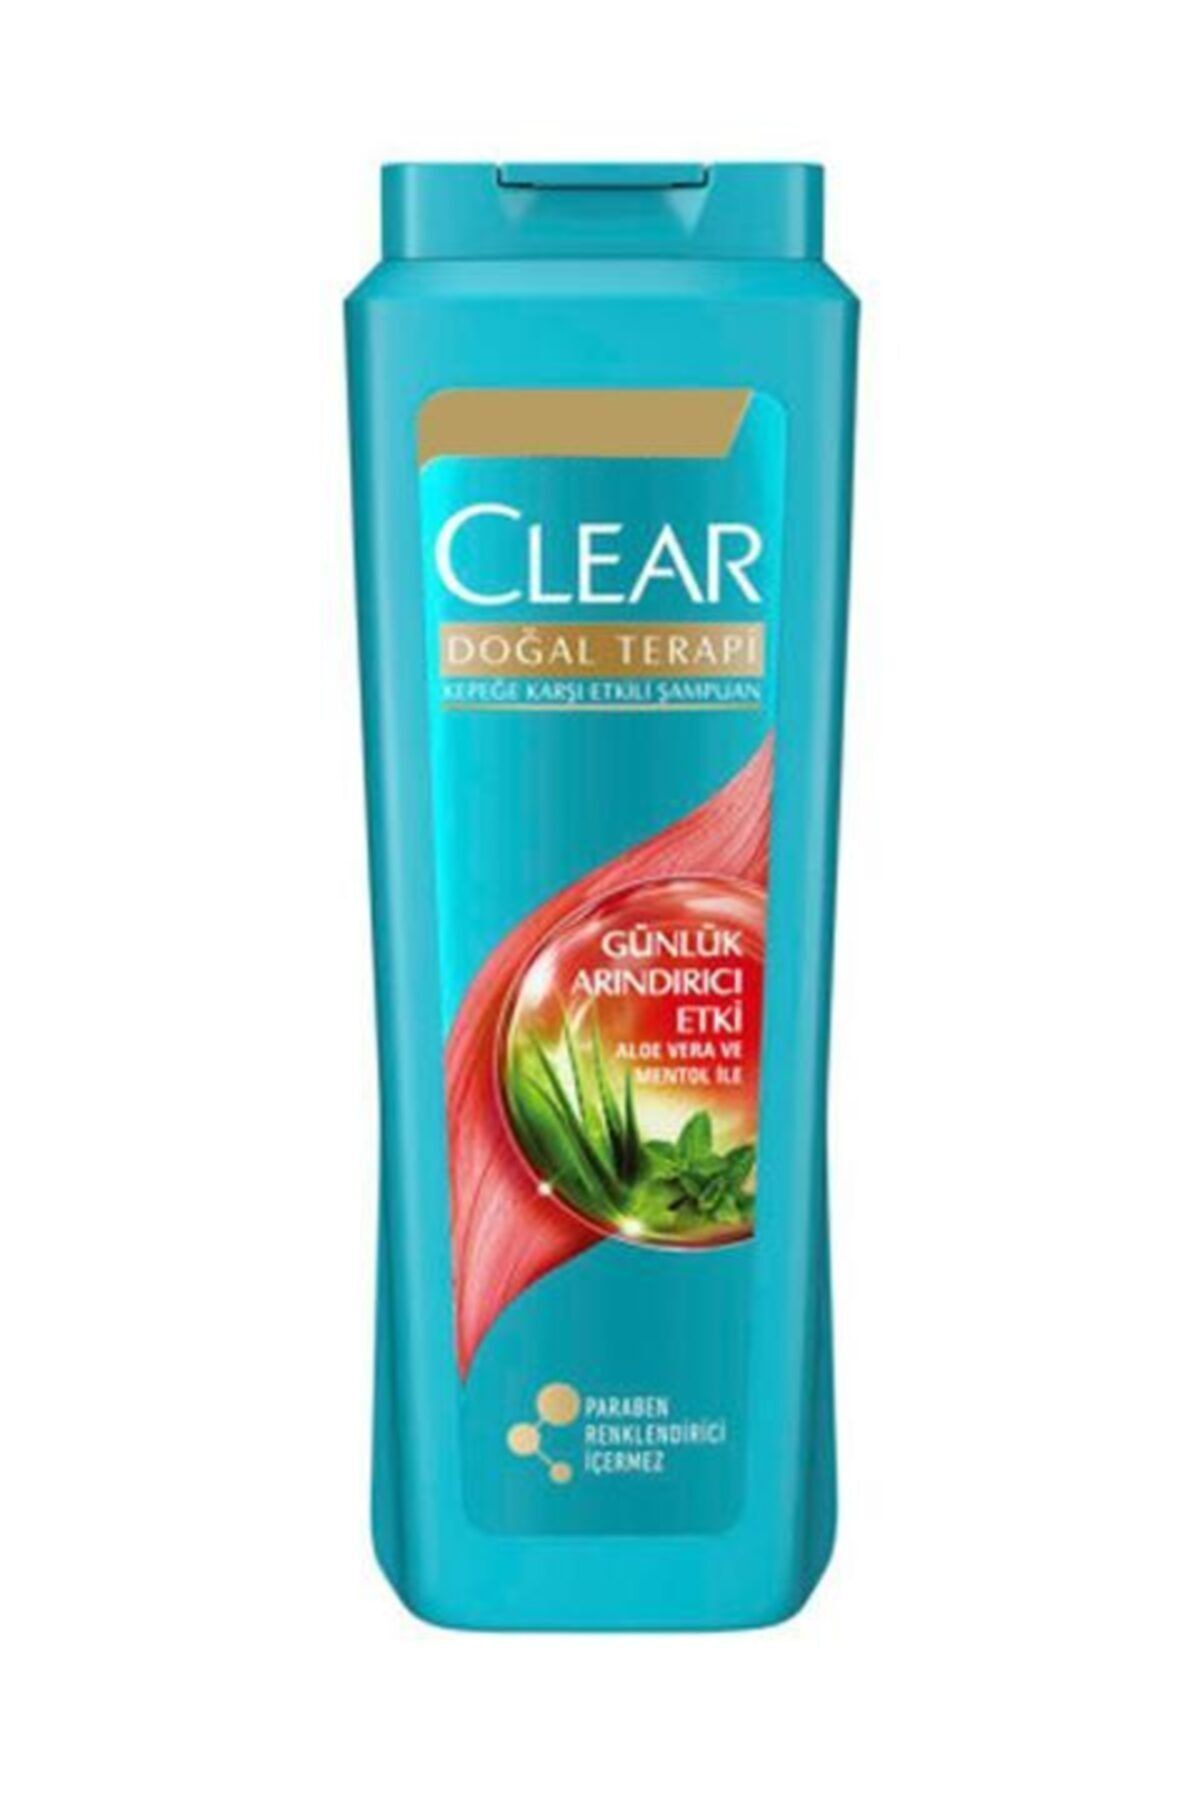 Clear Doğal Terapi Günlük Arındırıcı Şampuan 500 ml